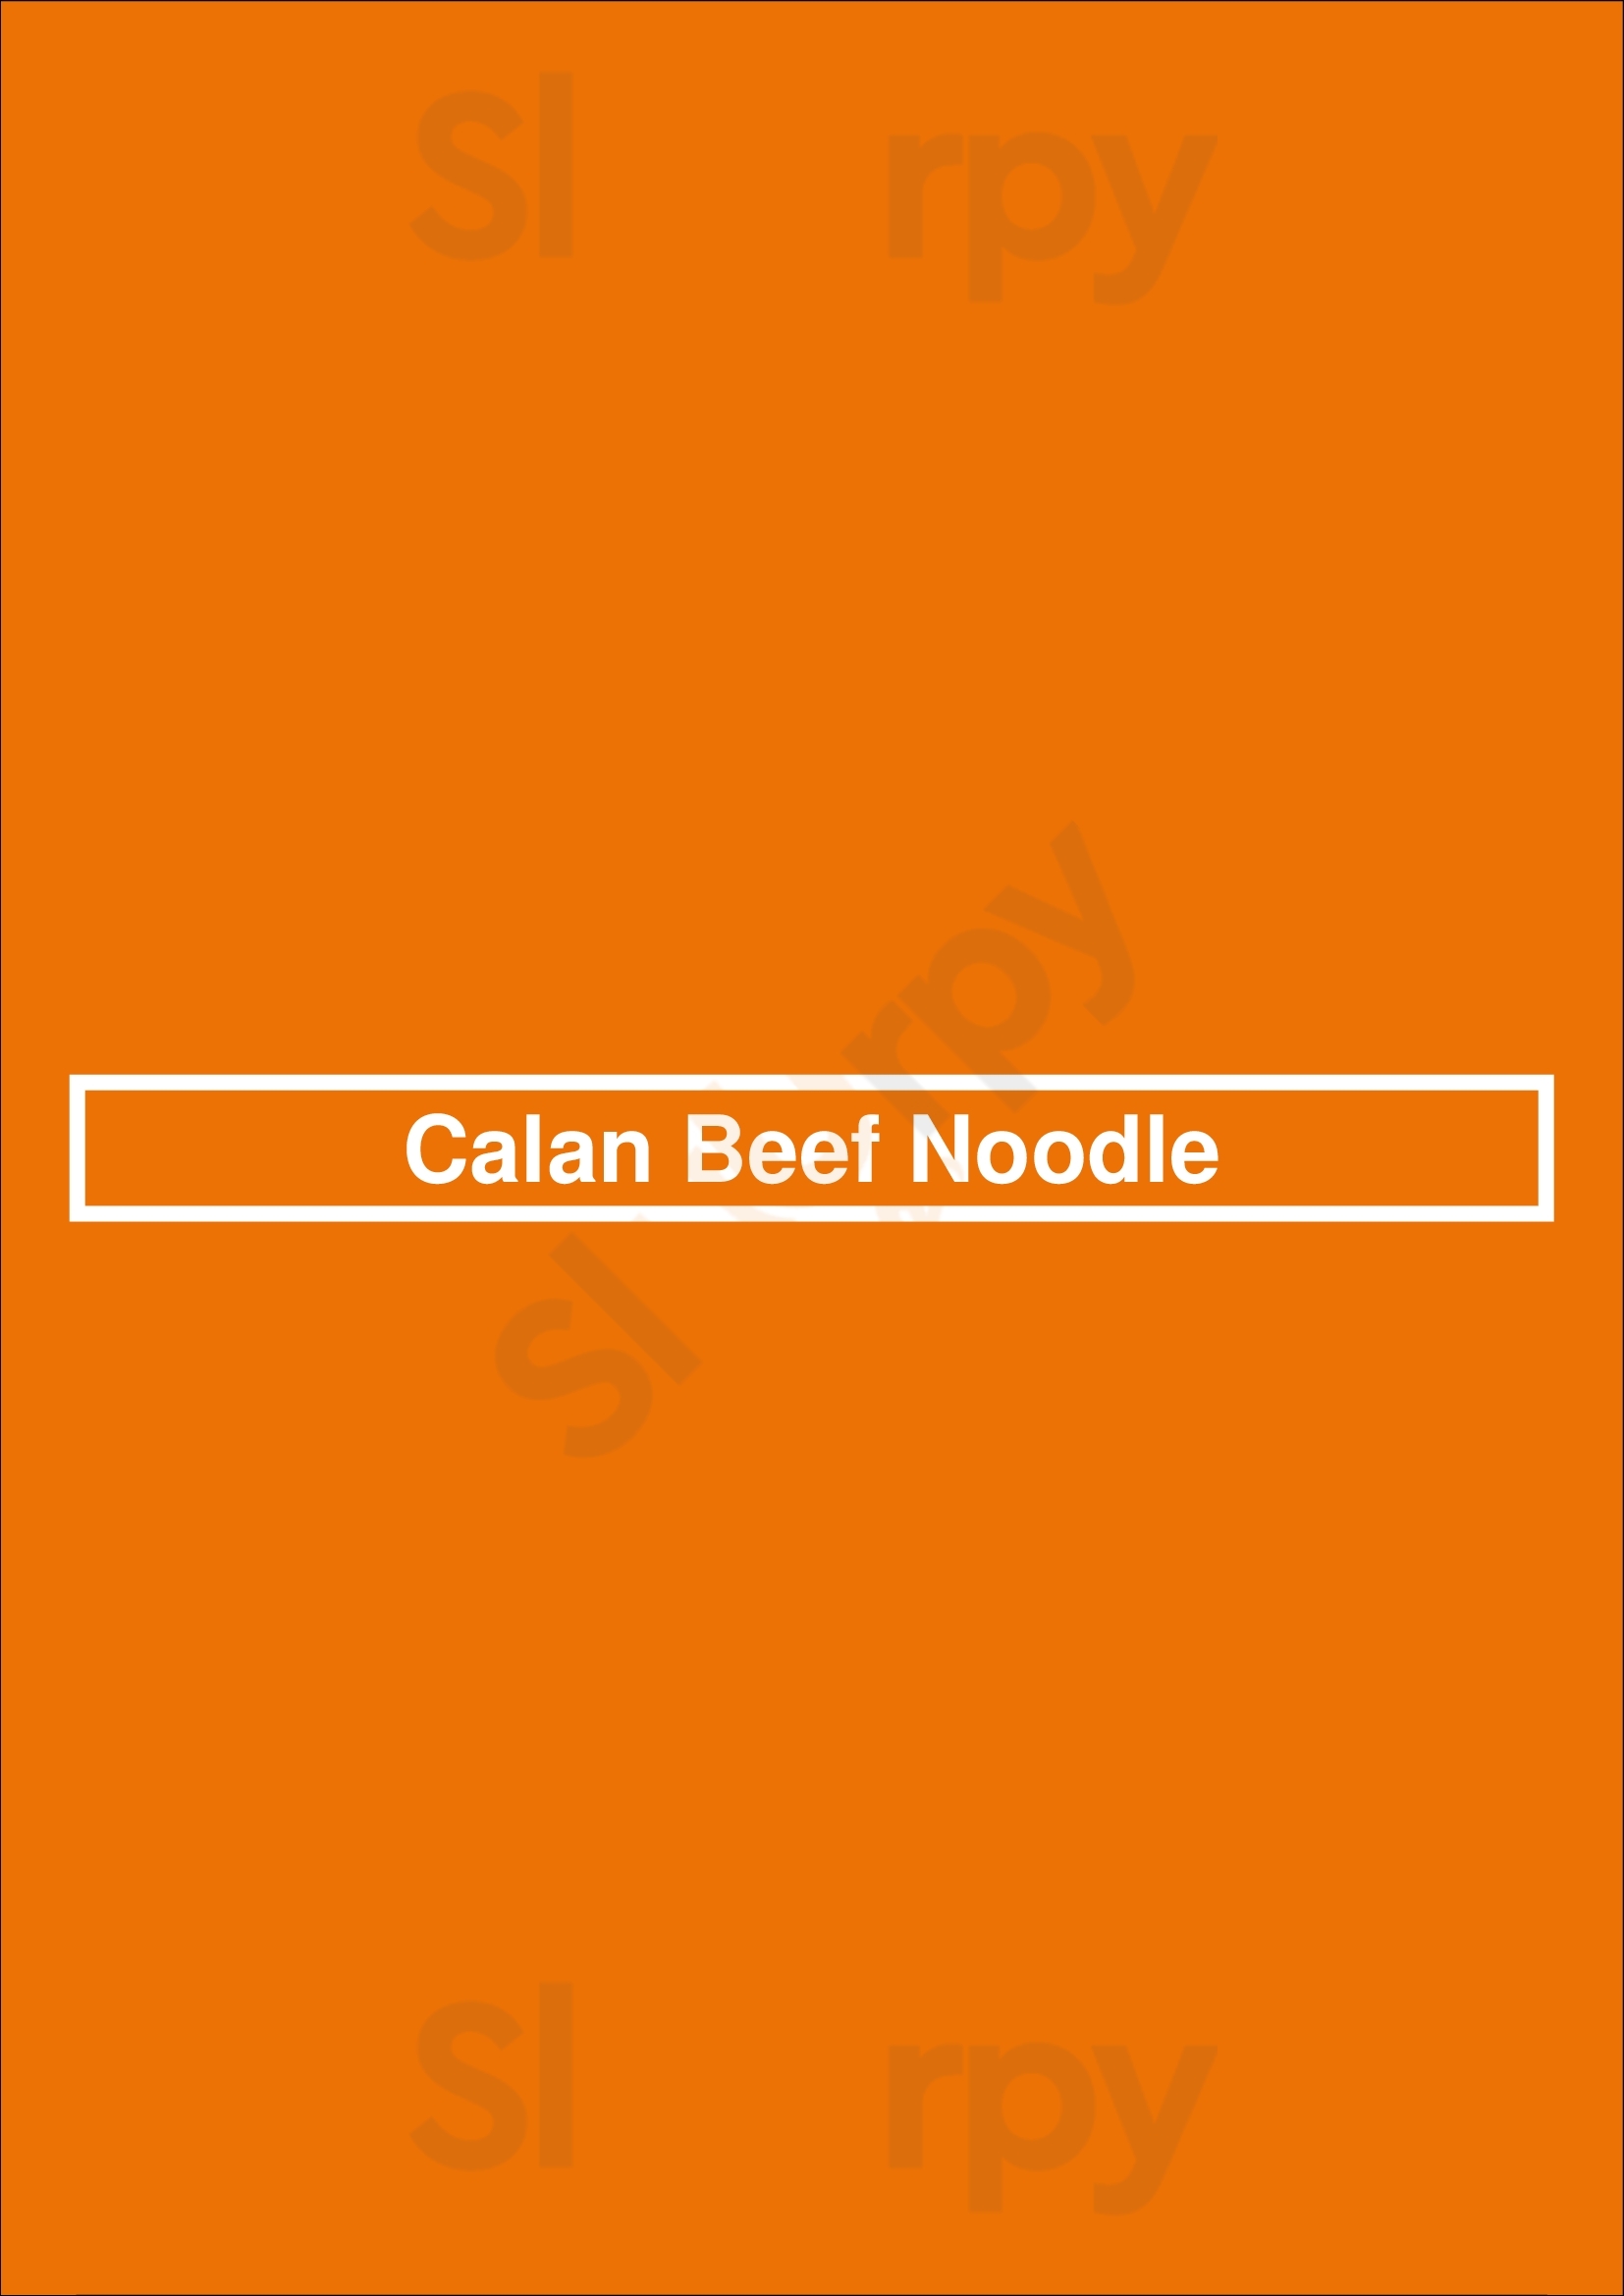 Calan Beef Noodle Calgary Menu - 1